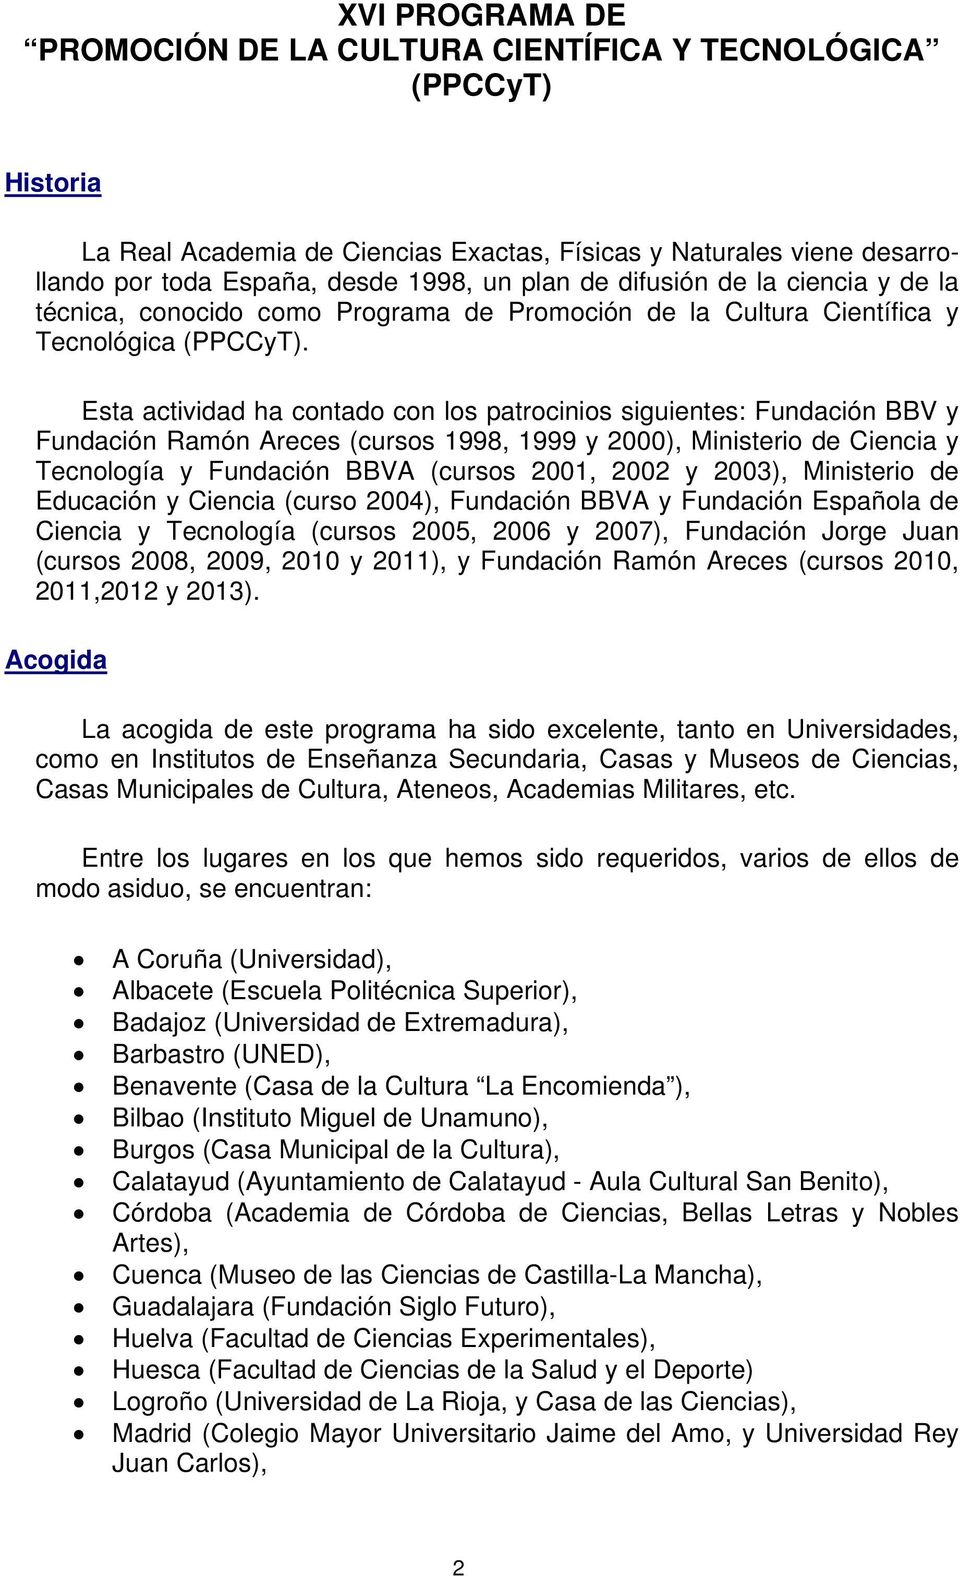 Esta actividad ha contado con los patrocinios siguientes: Fundación BBV y Fundación Ramón Areces (cursos 1998, 1999 y 2000), Ministerio de Ciencia y Tecnología y Fundación BBVA (cursos 2001, 2002 y